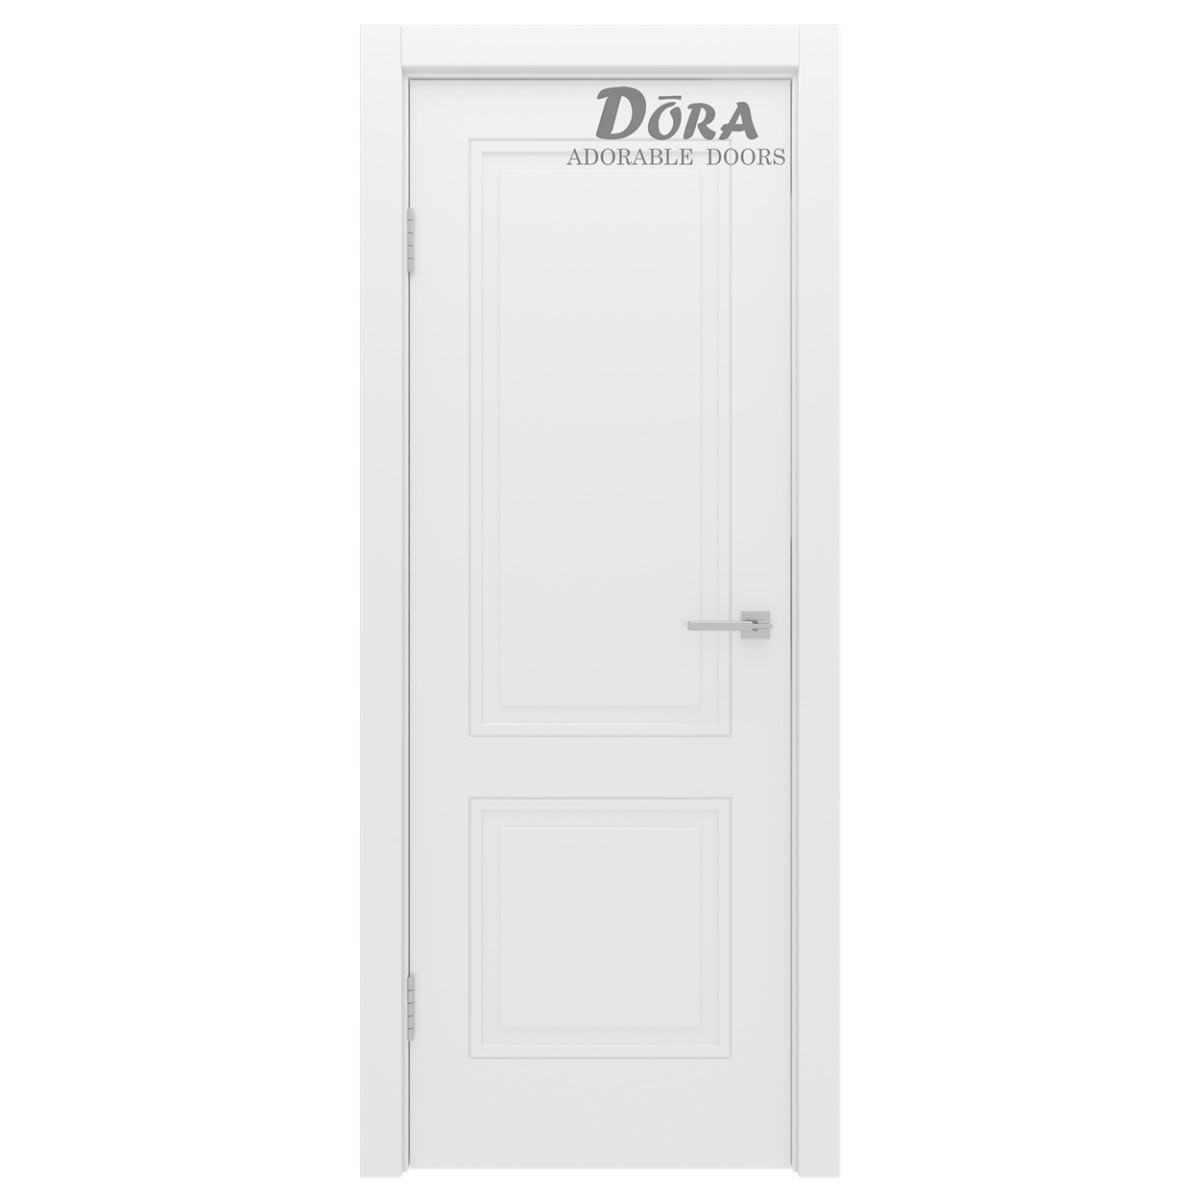 Dora Duo, Balta emalija, krāsotu durvju komplekts - Vērtne, Kārba, 2 Eņģes